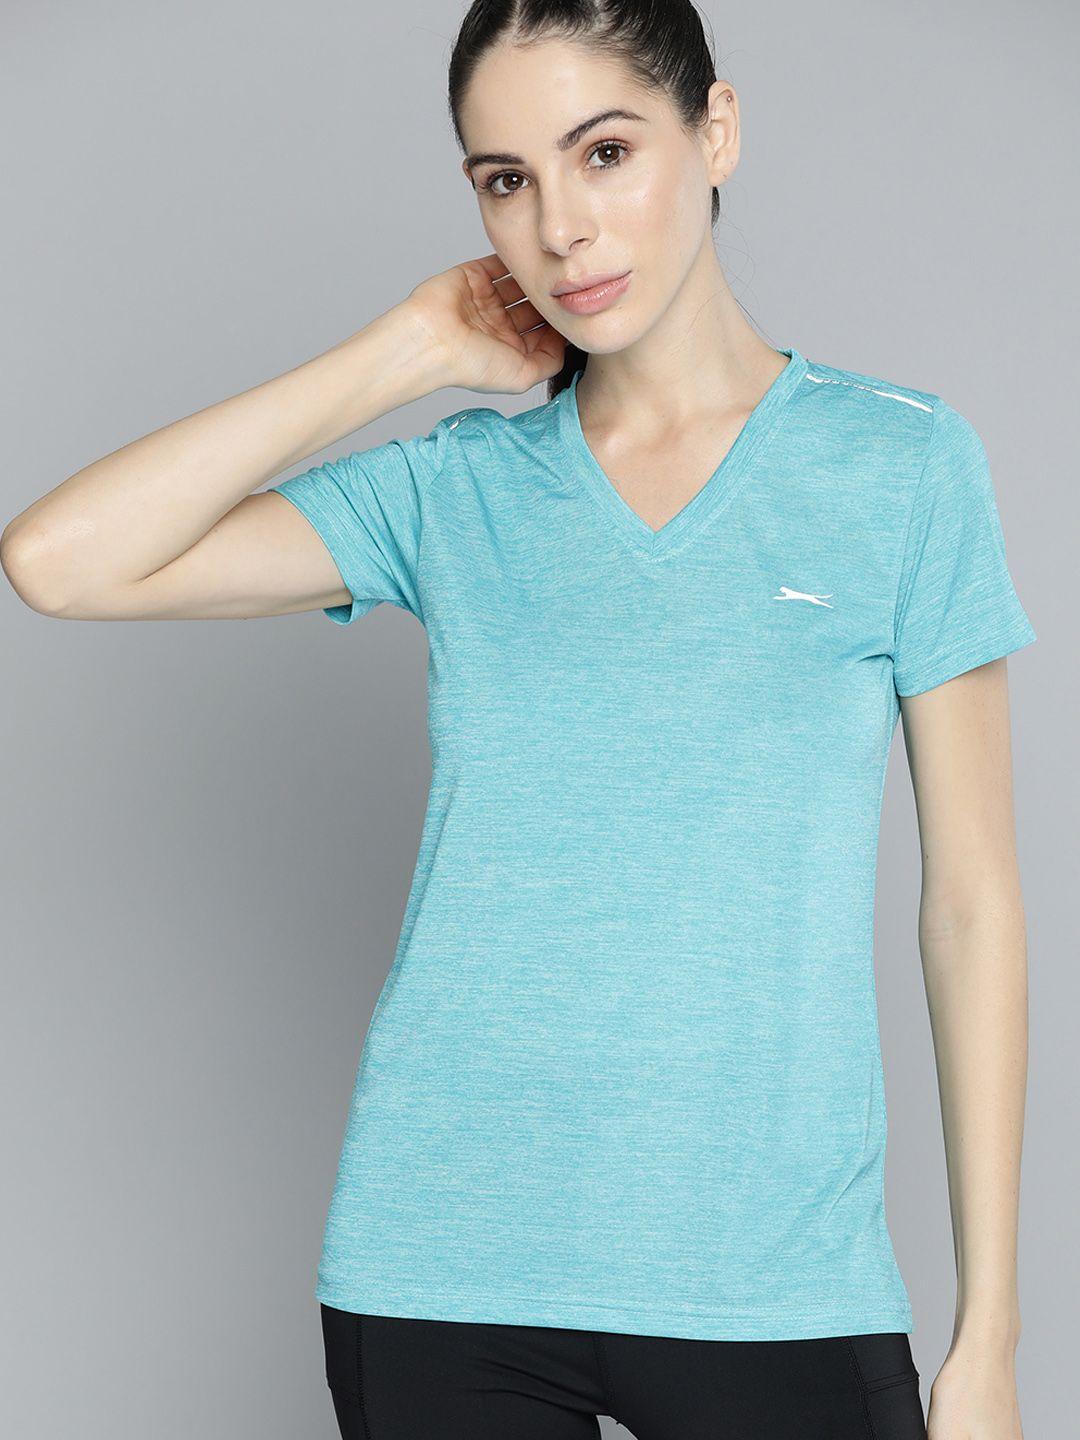 slazenger women blue & grey melange slim fit v-neck t-shirt